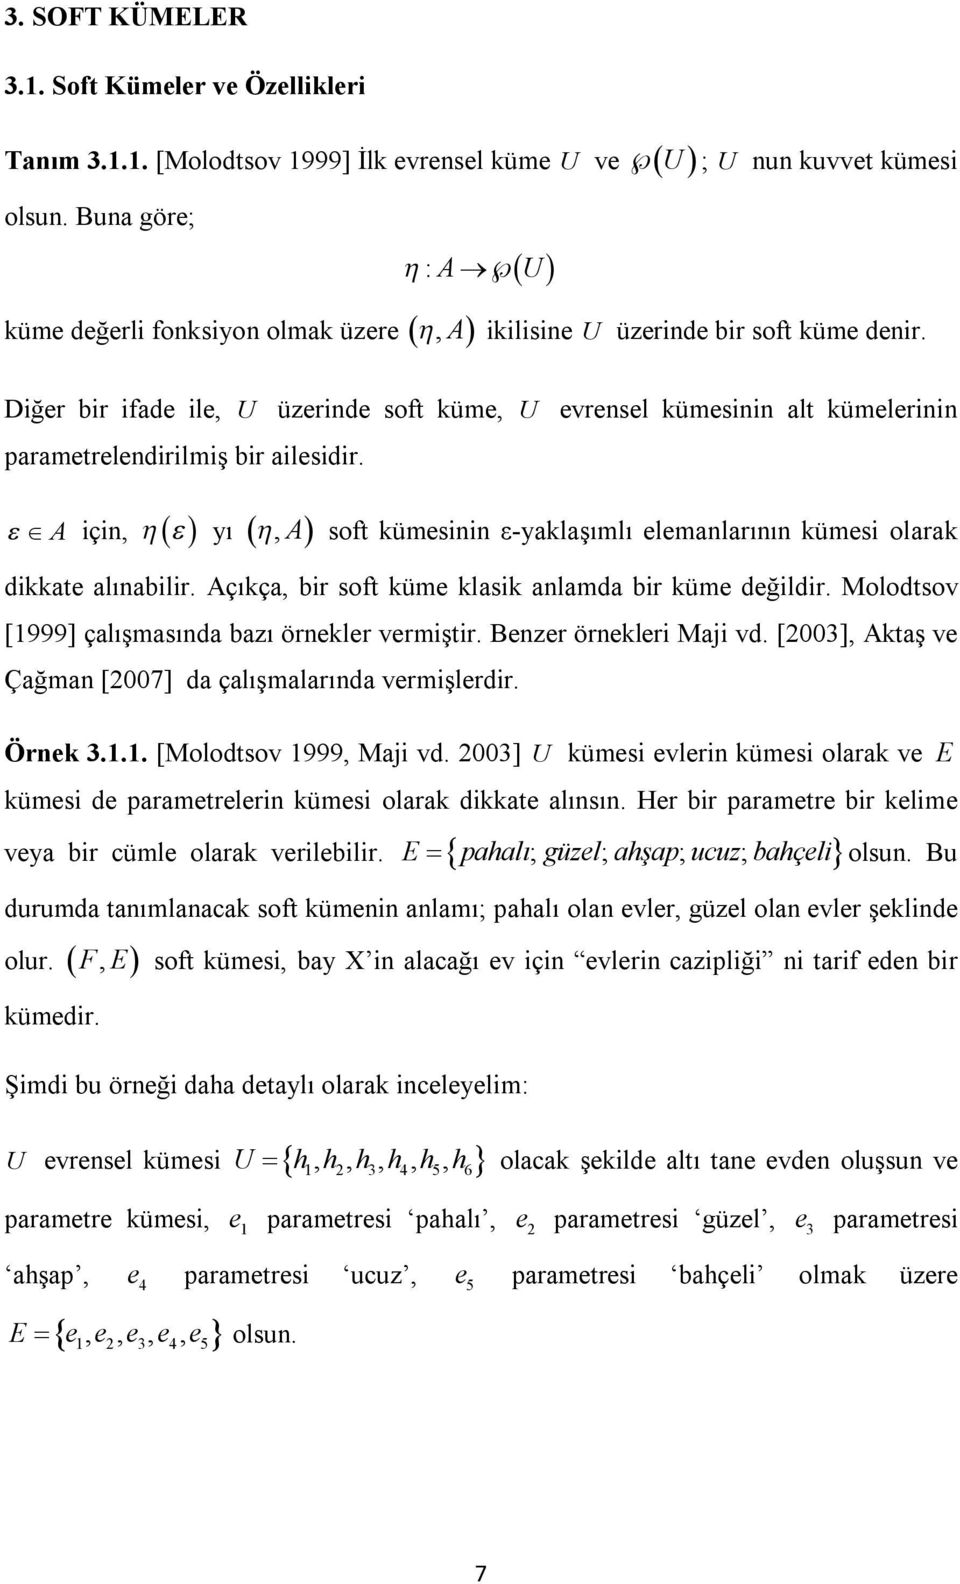 A çn, yı, A soft kümesnn ε-yaklaşımlı elemanlarının kümes olarak dkkate alınablr. Açıkça, br soft küme klask anlamda br küme değldr. Molodtsov [1999] çalışmasında bazı örnekler vermştr.